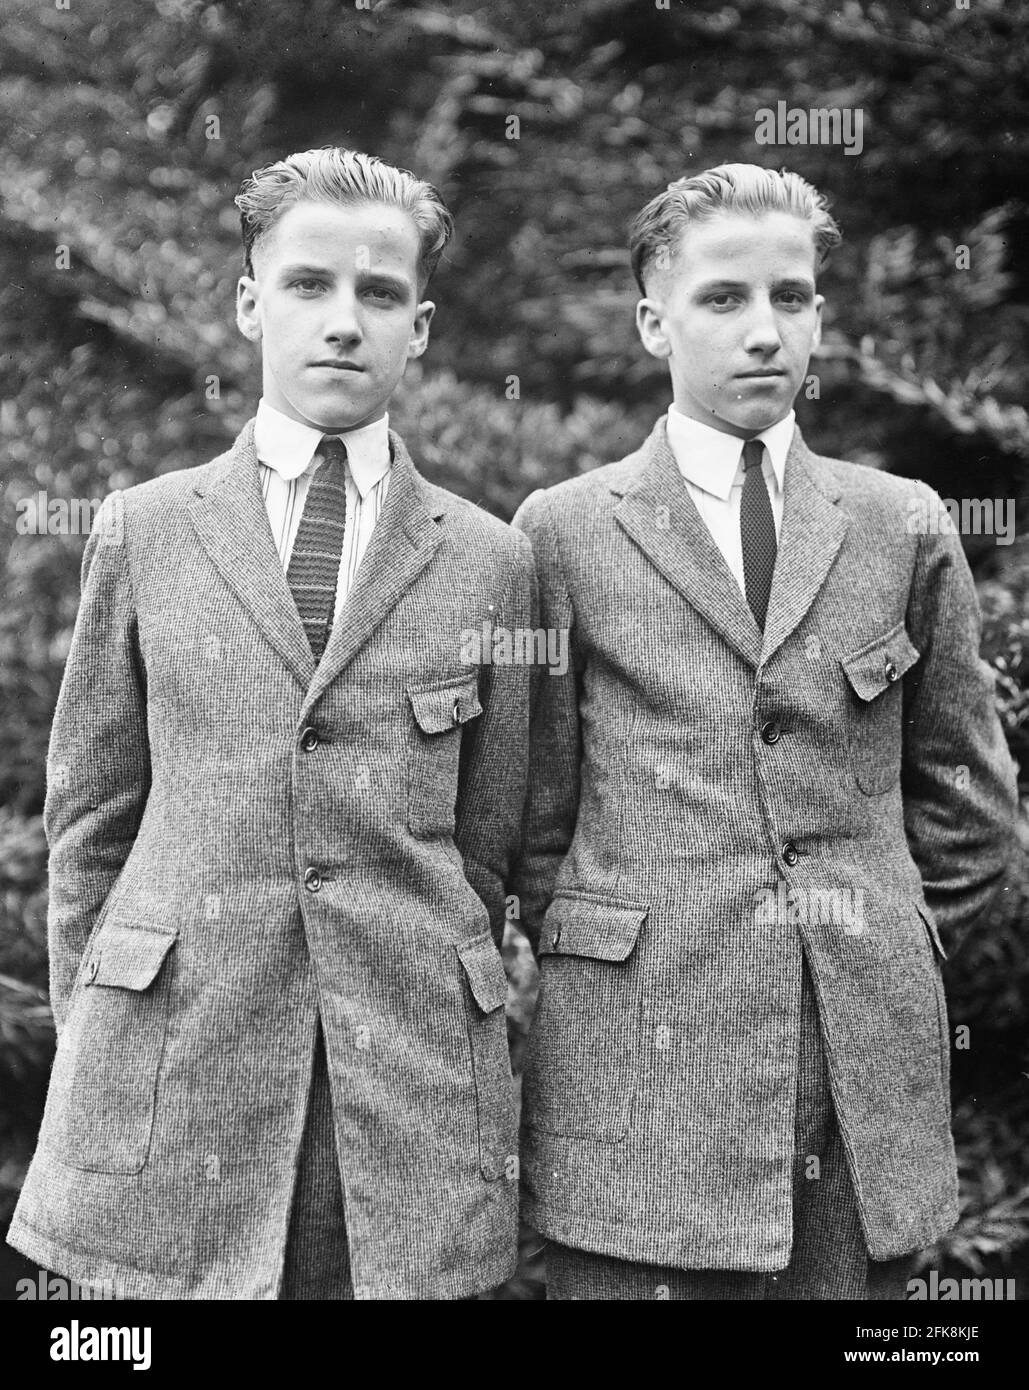 J. Walter lang (links) und Francis lang, 17 Jahre alte Zwillinge aus Manchester, Ohio, die auf der Reise von Cincinnati nach Point Pleasant, Ohio, auf Grant's Centennial knapp dem Tod auf dem Dampfer Island Queen entflohen sind. Sie waren Mitglieder der Jungen-Band, die für den Präsidenten spielen sollte, 1922 Stockfoto